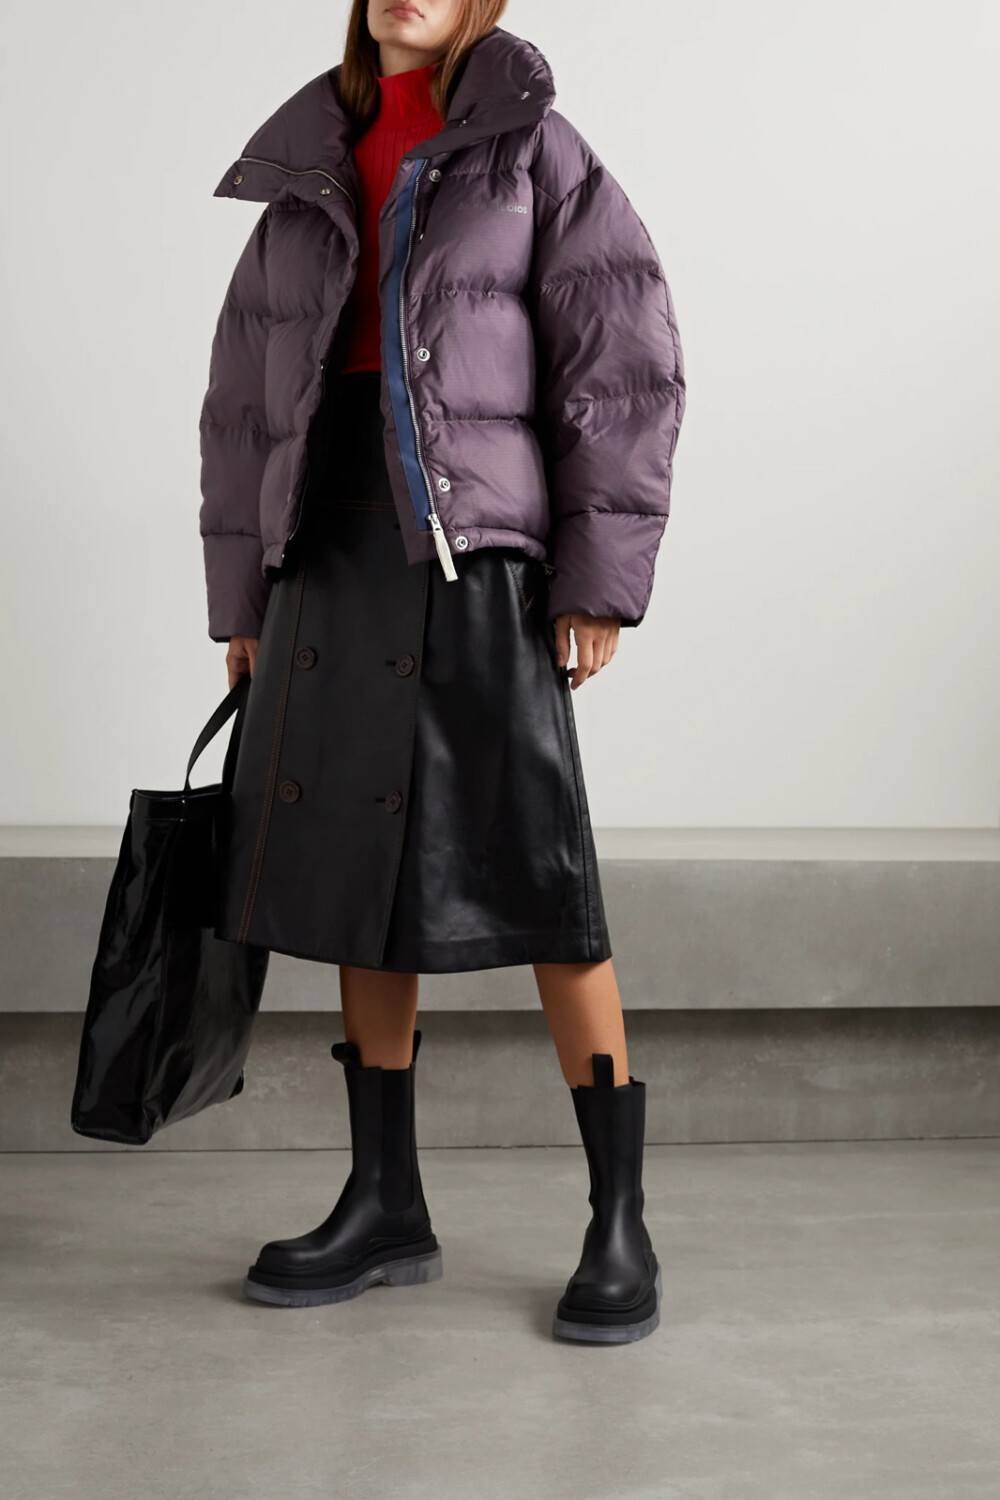 来自瑞典的 Acne Studios 向来擅长打造外形炫酷、质感舒适的户外服饰。这款绗缝外套是以紫色格子布制成，内里填充羽绒可保暖御寒，高耸的立领还能为你抵挡寒风。